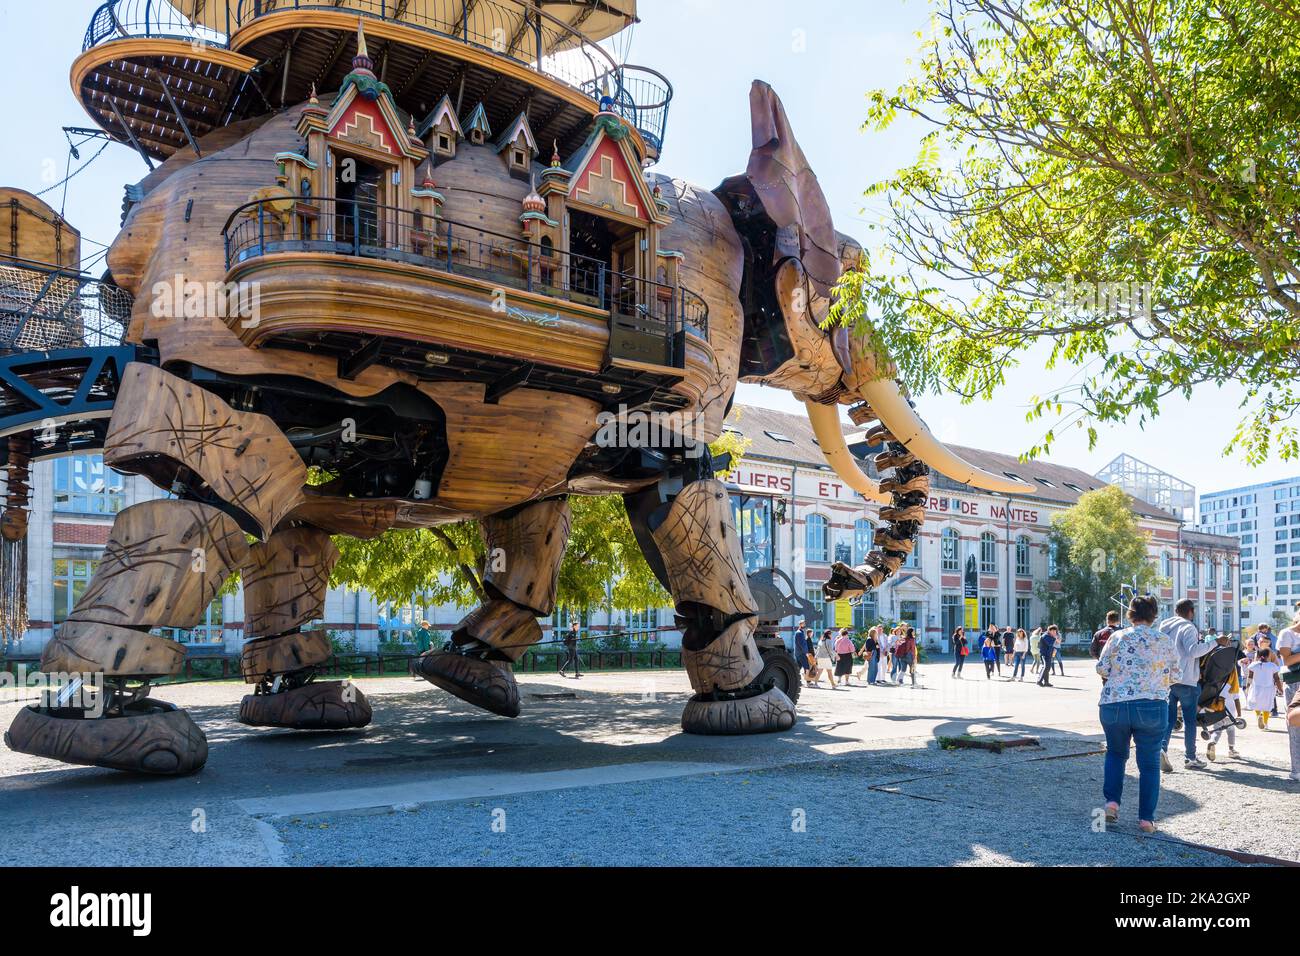 La marionnette géante du grand éléphant, qui fait partie des machines de l'attraction touristique de l'île de Nantes, se promène au milieu des spectateurs le long du bâtiment des chantiers navals. Banque D'Images